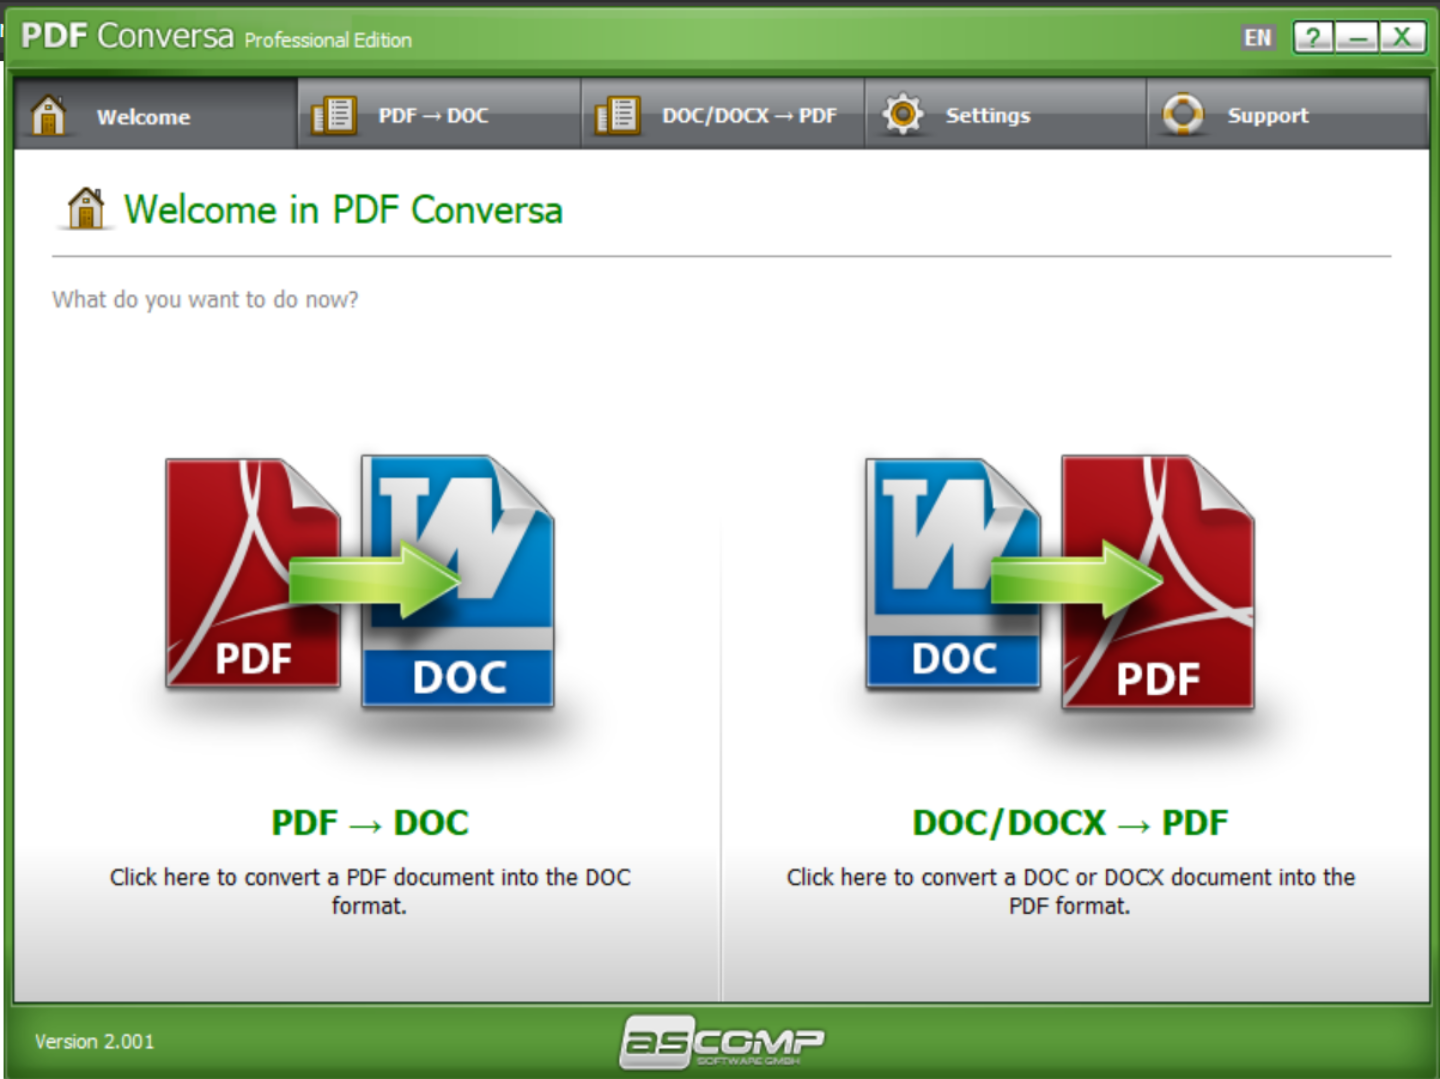 限時免費！PDF、Word 檔案轉換軟體『 PDF Conversa 專業版 』！PDF 檔轉換成可編輯的 Word 檔超方便！